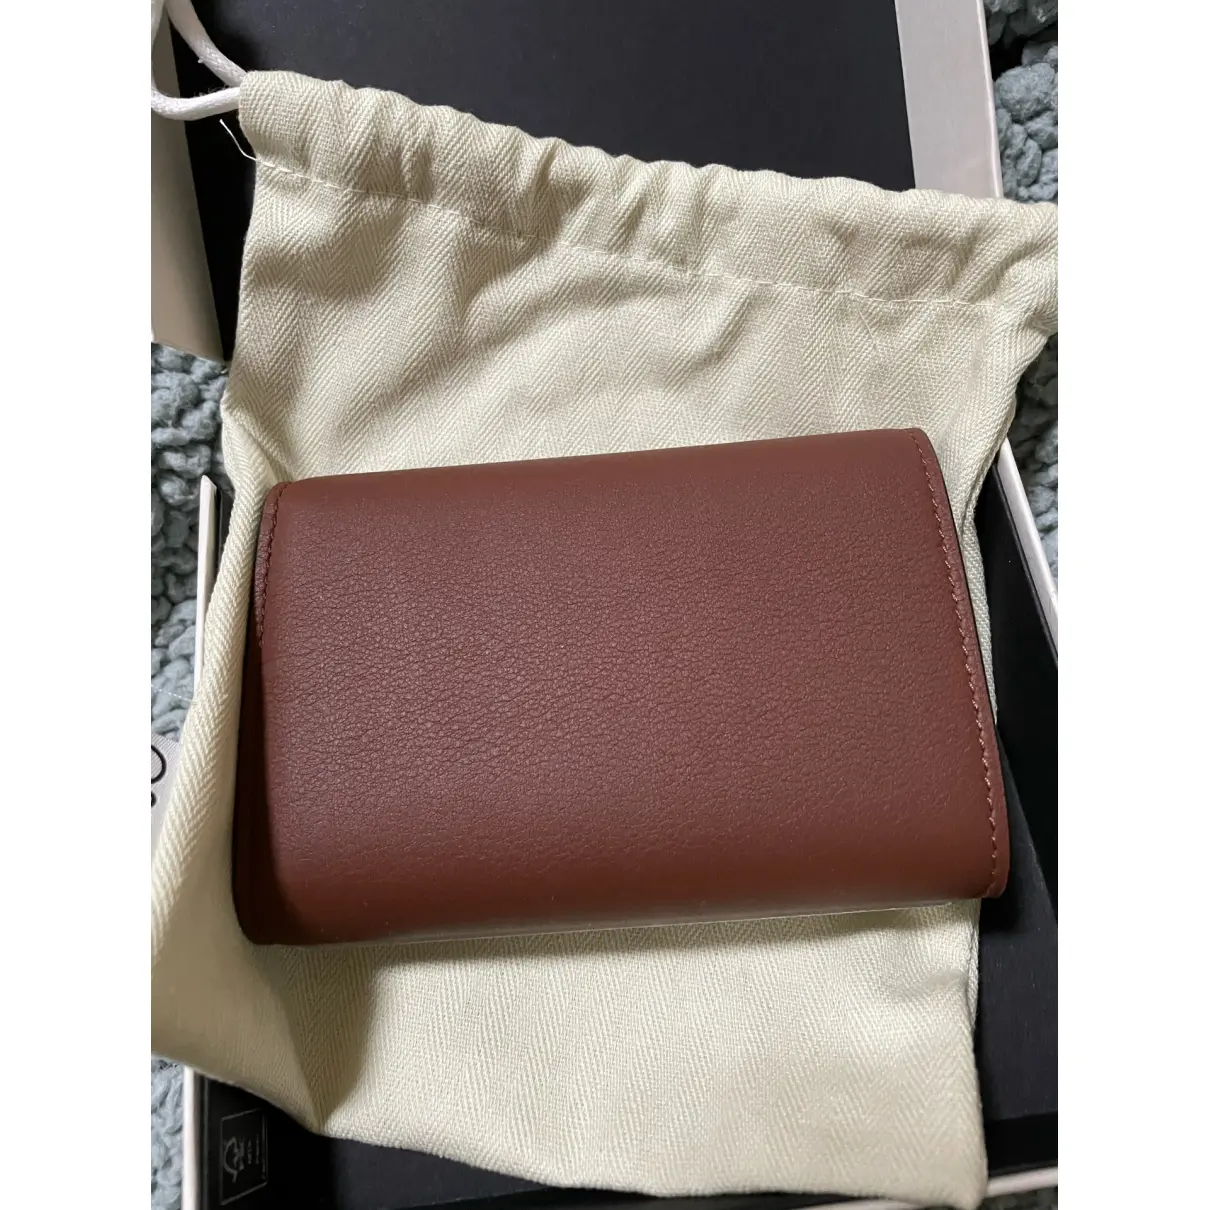 Buy Loewe Leather wallet online